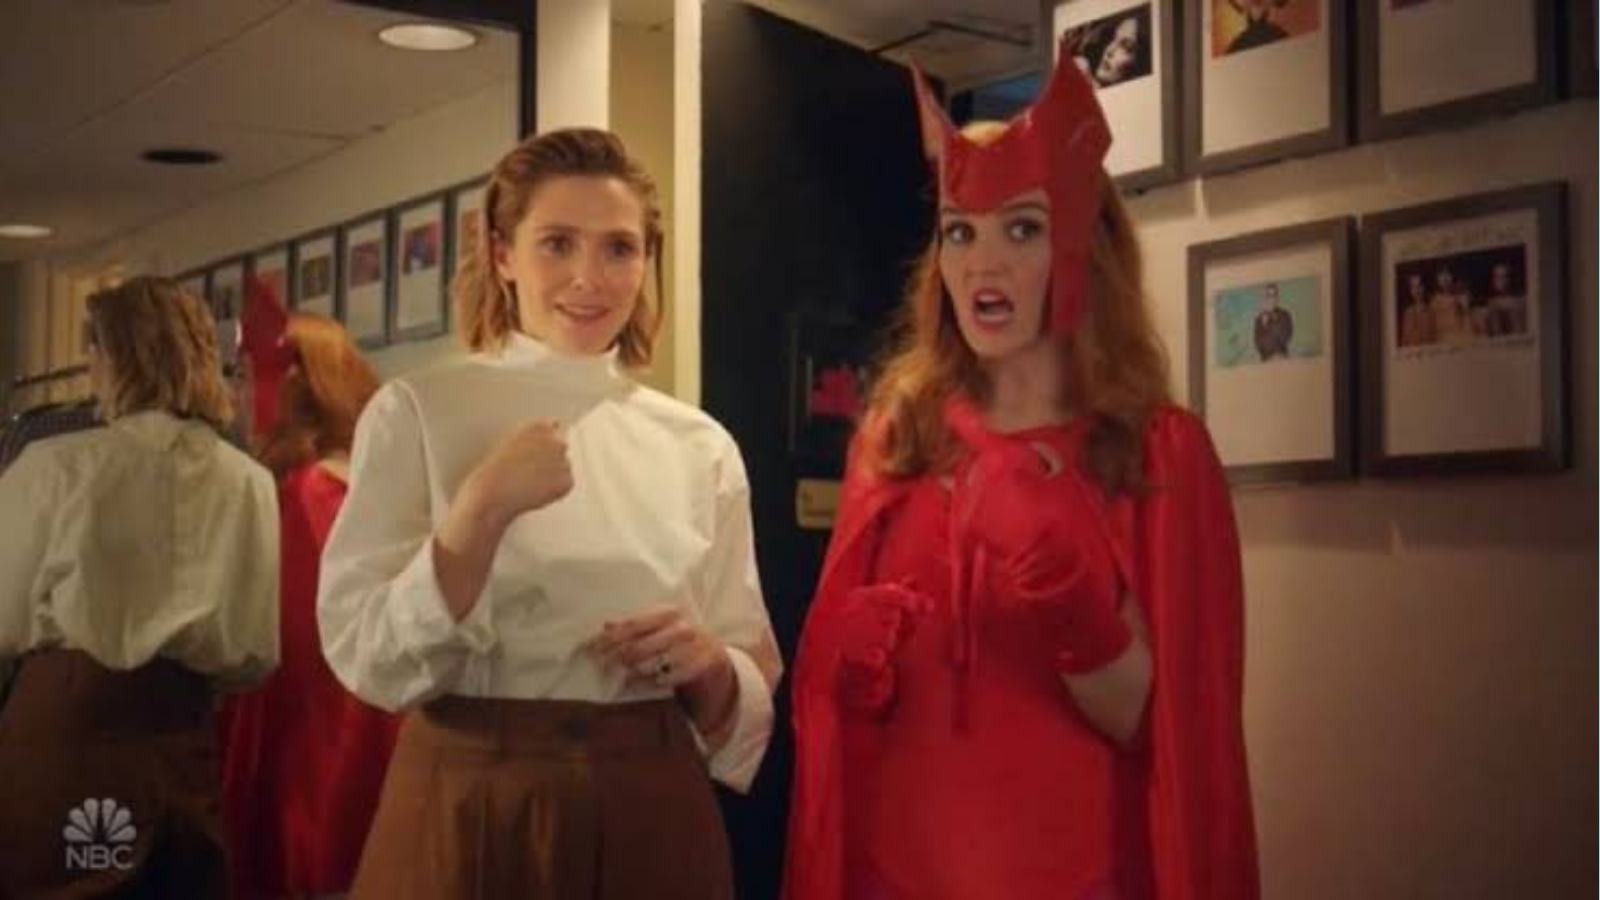 Chloe Fineman and Elizabeth Olsen in one of the SNL skits